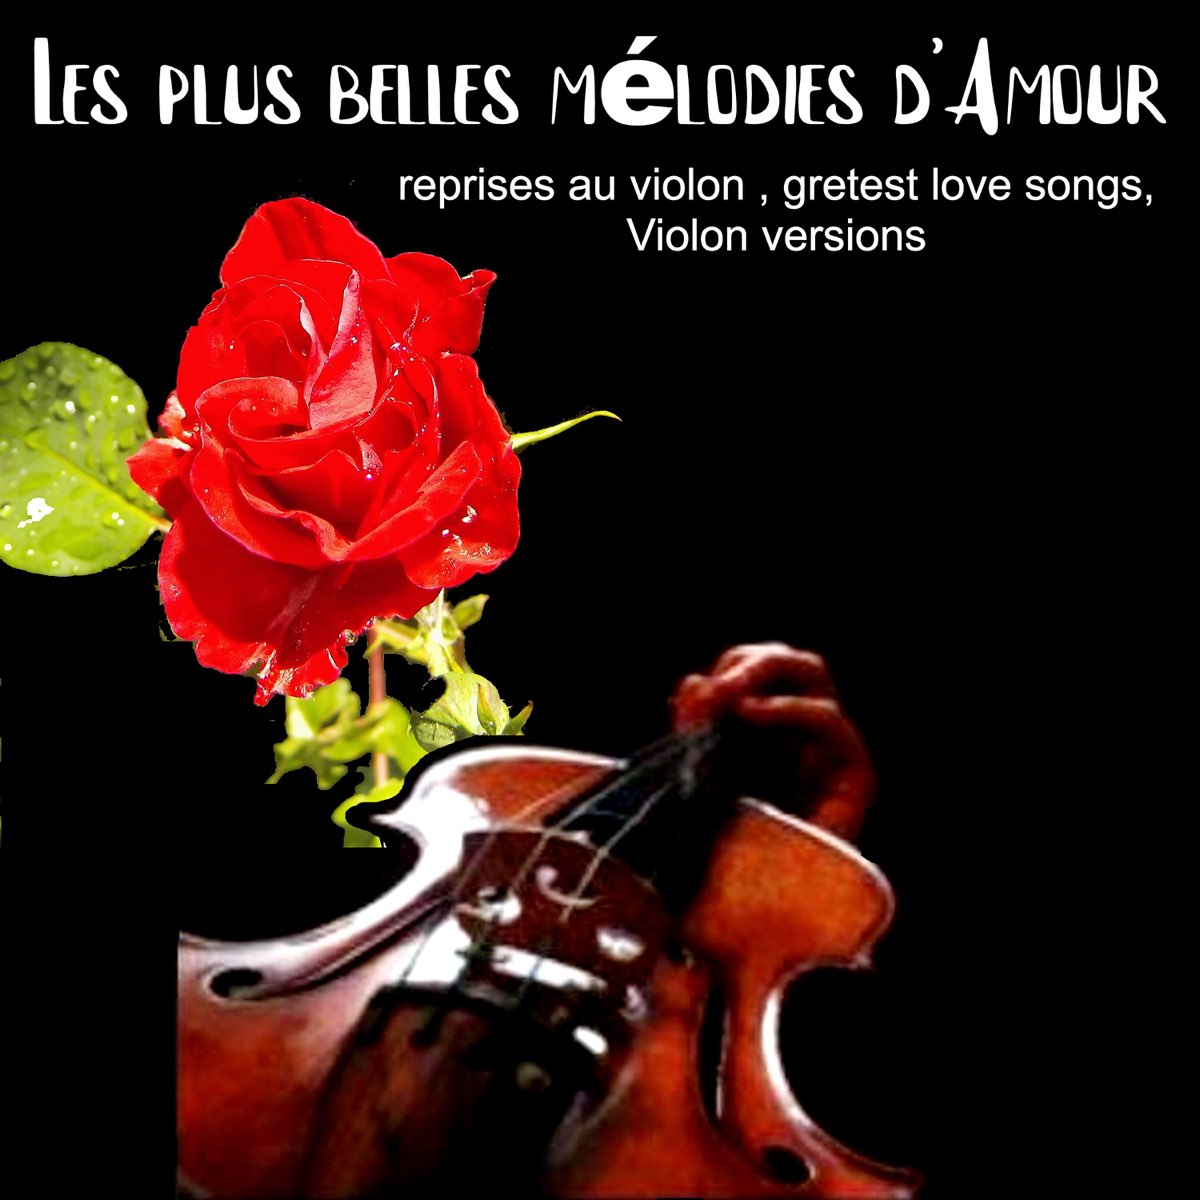 Les plus belles mélodies d'amour reprises au violon (Greatest Love Songs,  Violin Versions) – Album par Ga – Apple Music